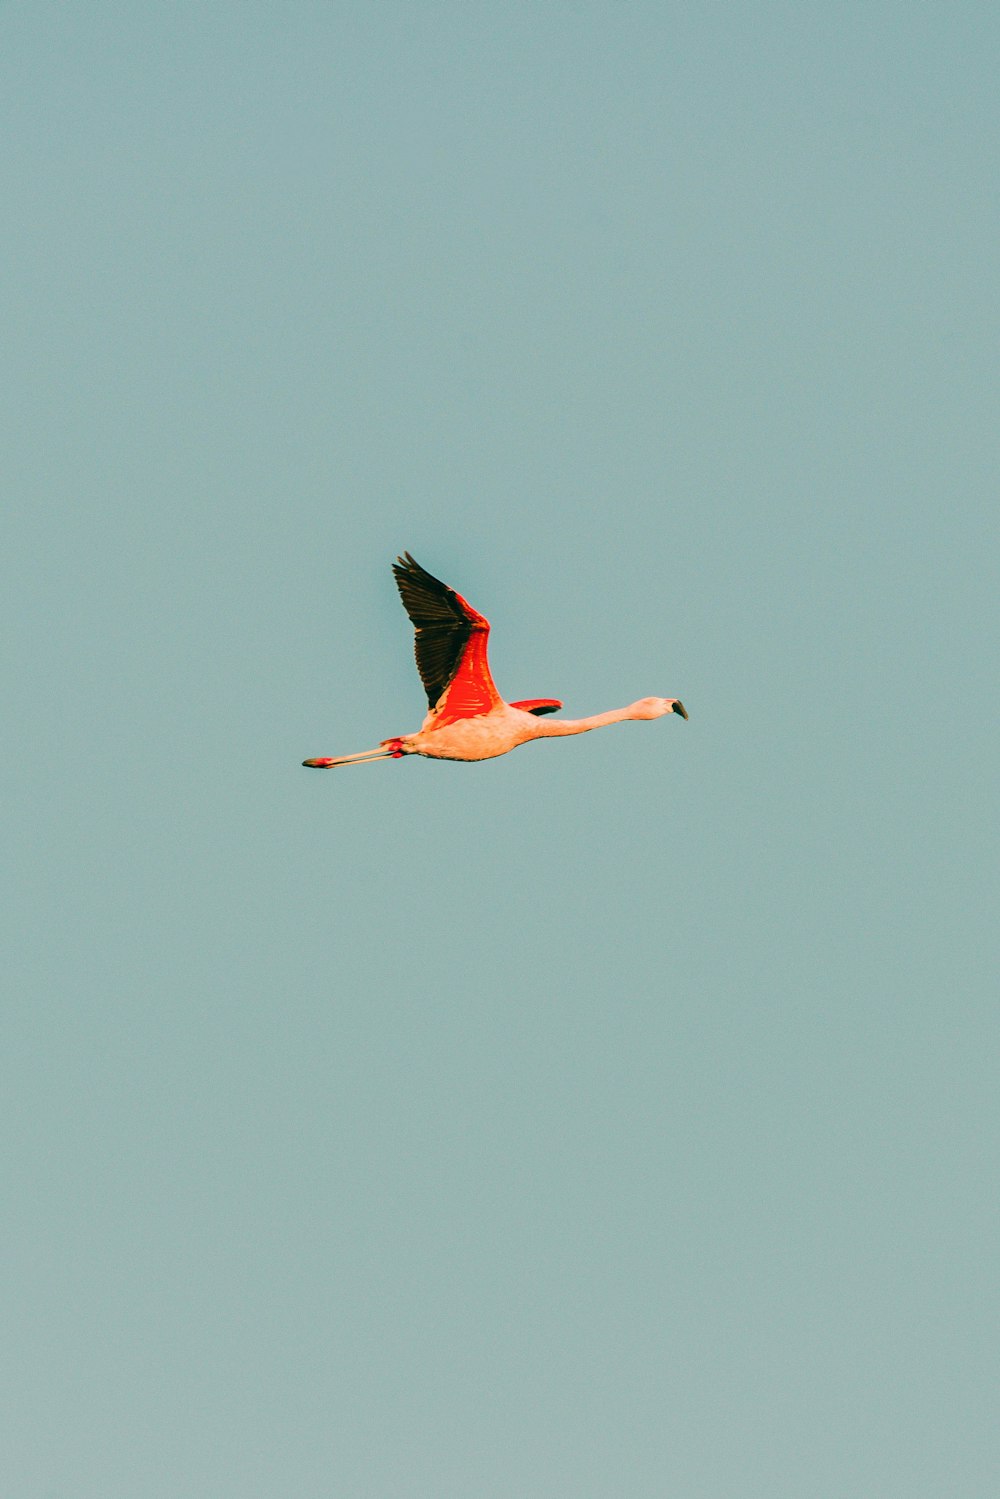 um pássaro rosa e preto voando através de um céu azul